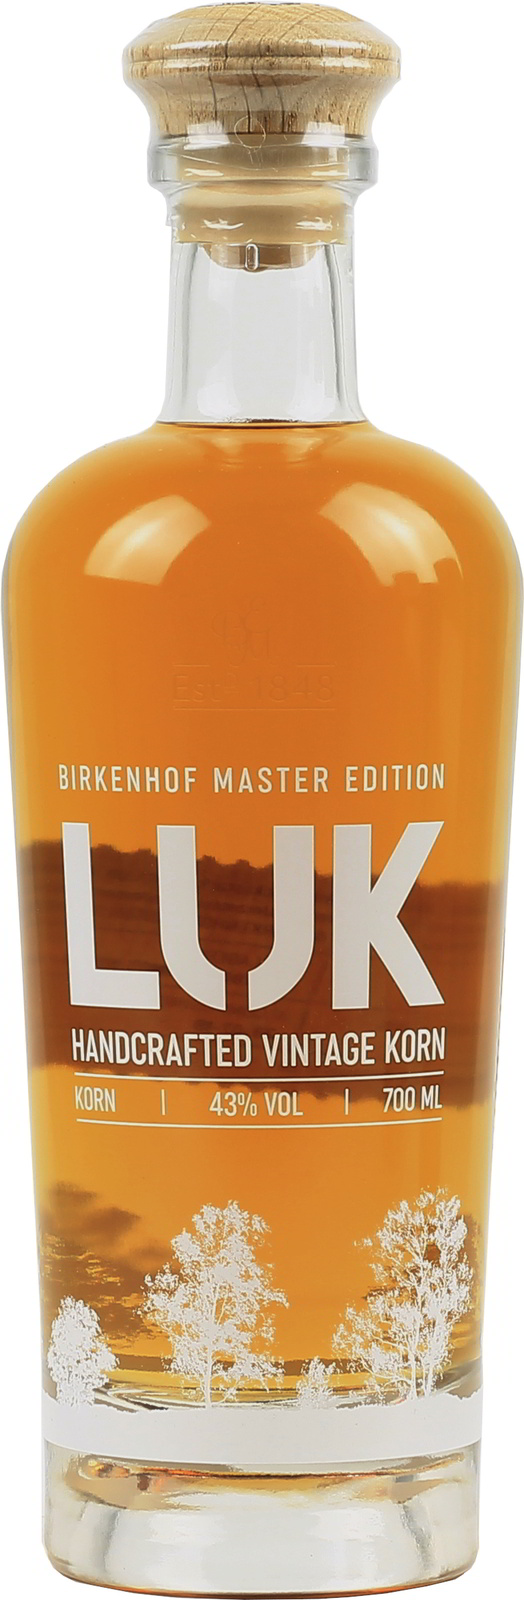 Korn, Birkenhof Vintage Handcrafted LUK exquisit